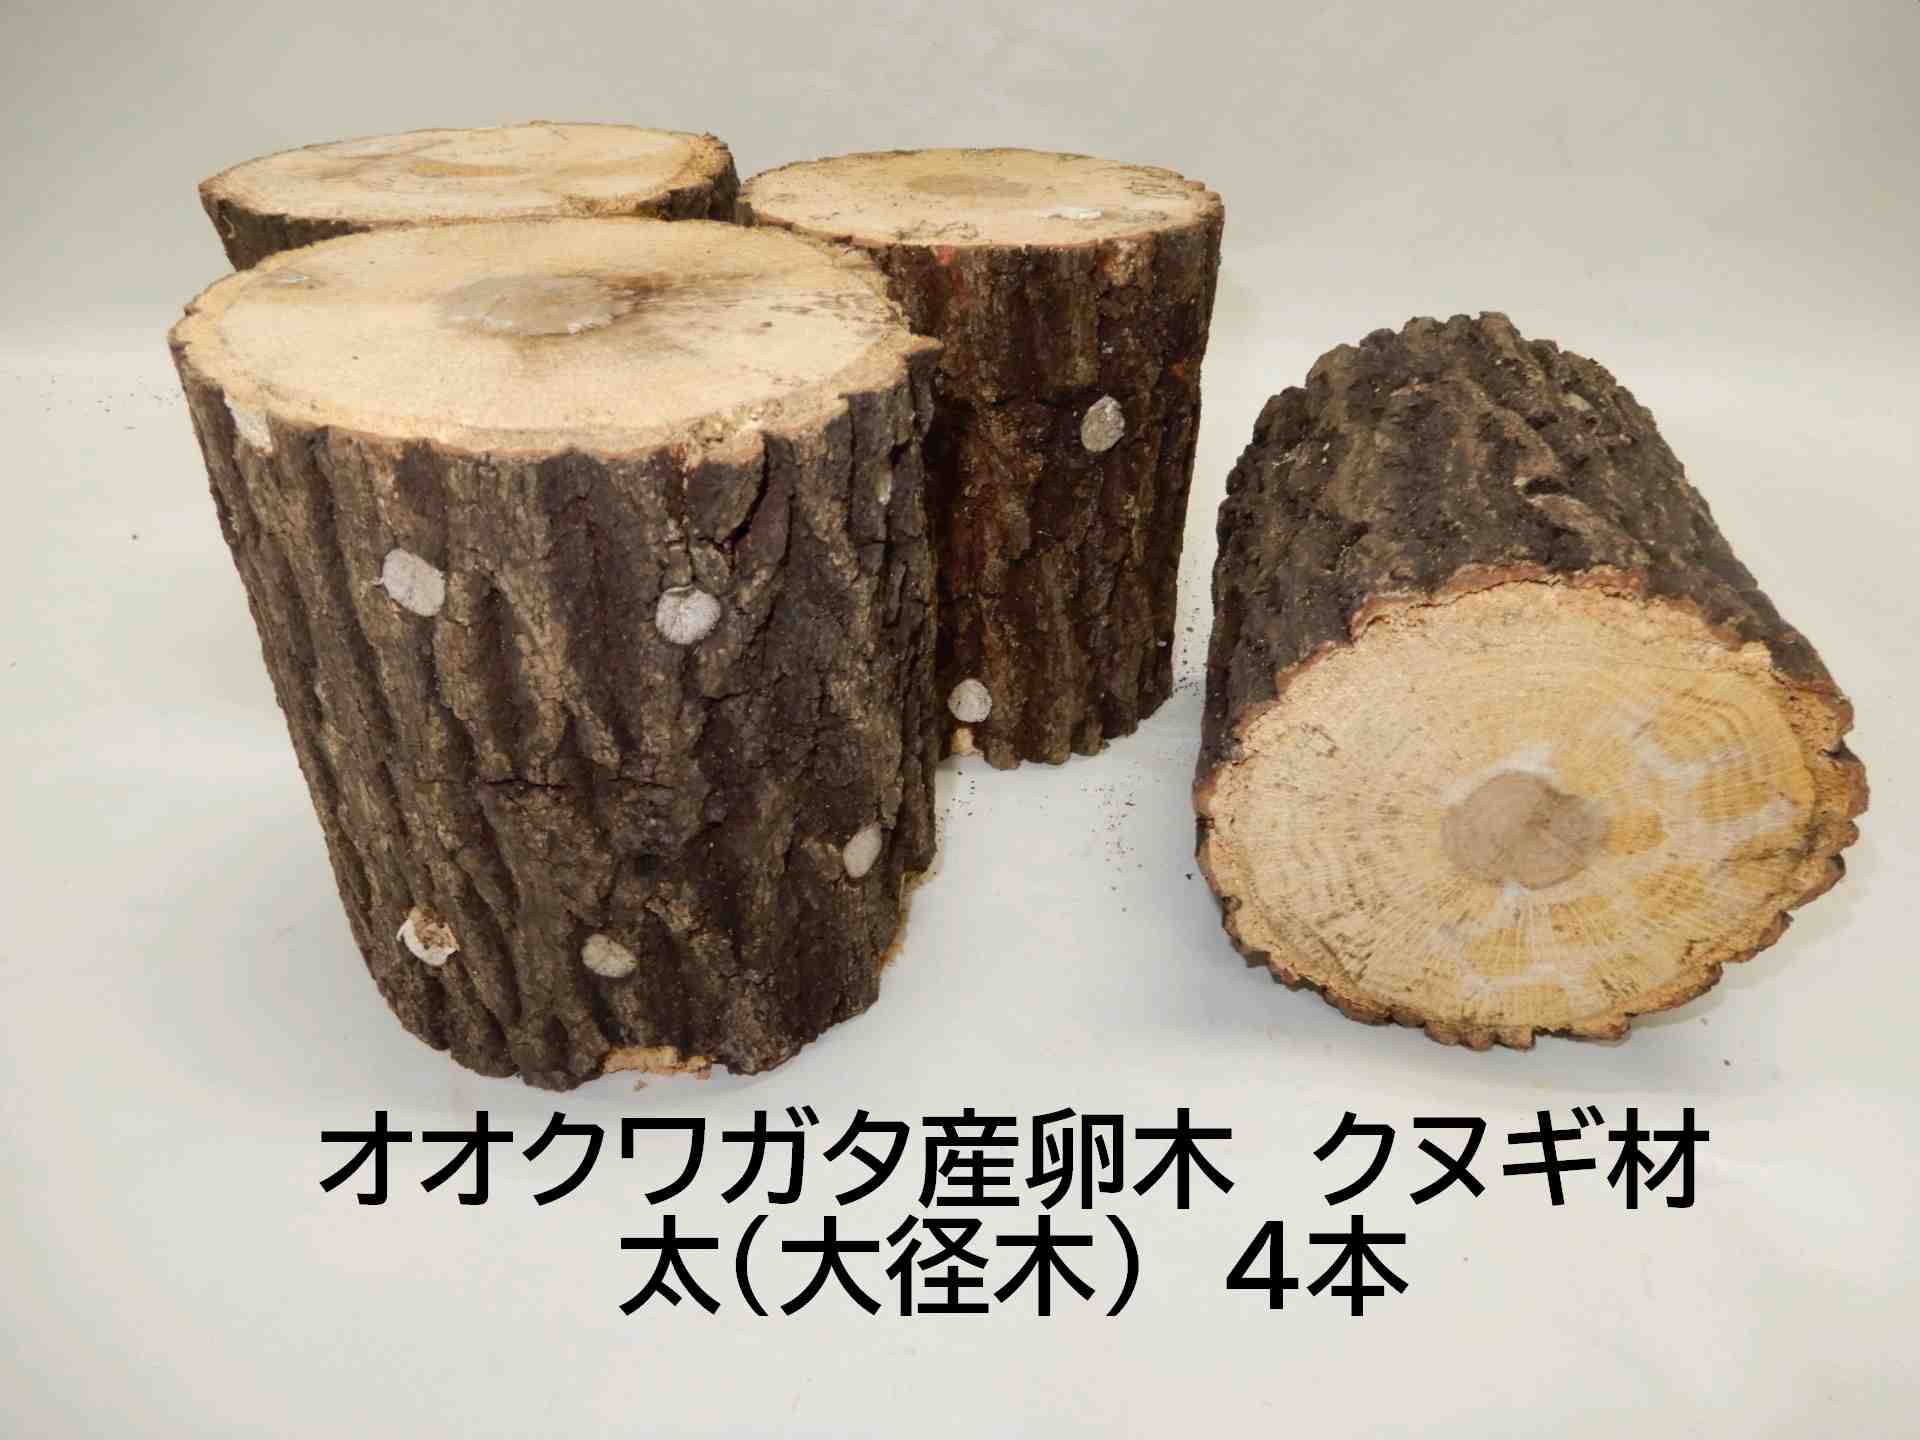 KL102はクヌギ大径木が2本入りです KL104はクヌギ大径木が4本入りです 約10年ぶりに復活します。高橋農園のクワガタ産卵飼育材・クヌギ材です。 全品、農薬は全く使っておりません。 また、国産の原木を使っています。 クヌギ材で大径木、やや硬め（柔軟材ではありません） 長さ約14cm、太さ約11～15cm、箱入りで2本入り、または4本入りです。 稀に、産卵木の切口面が白色または褐色に変色している場合があります。 これは、「菌紋」というもので、産卵木の中のしいたけ菌が外に噴出し、白色に見える場合があるものです。 さらに、この菌紋が褐色にになる場合があります。 これを「褐変」と言います。 いずれも、しいたけ菌が生きている証拠です。 この場合、産卵木の中に害虫がいる可能性が少なくなります。 10年前と比べ諸経費が値上がりしており、商品が値上がりしましたことをご容赦ください。